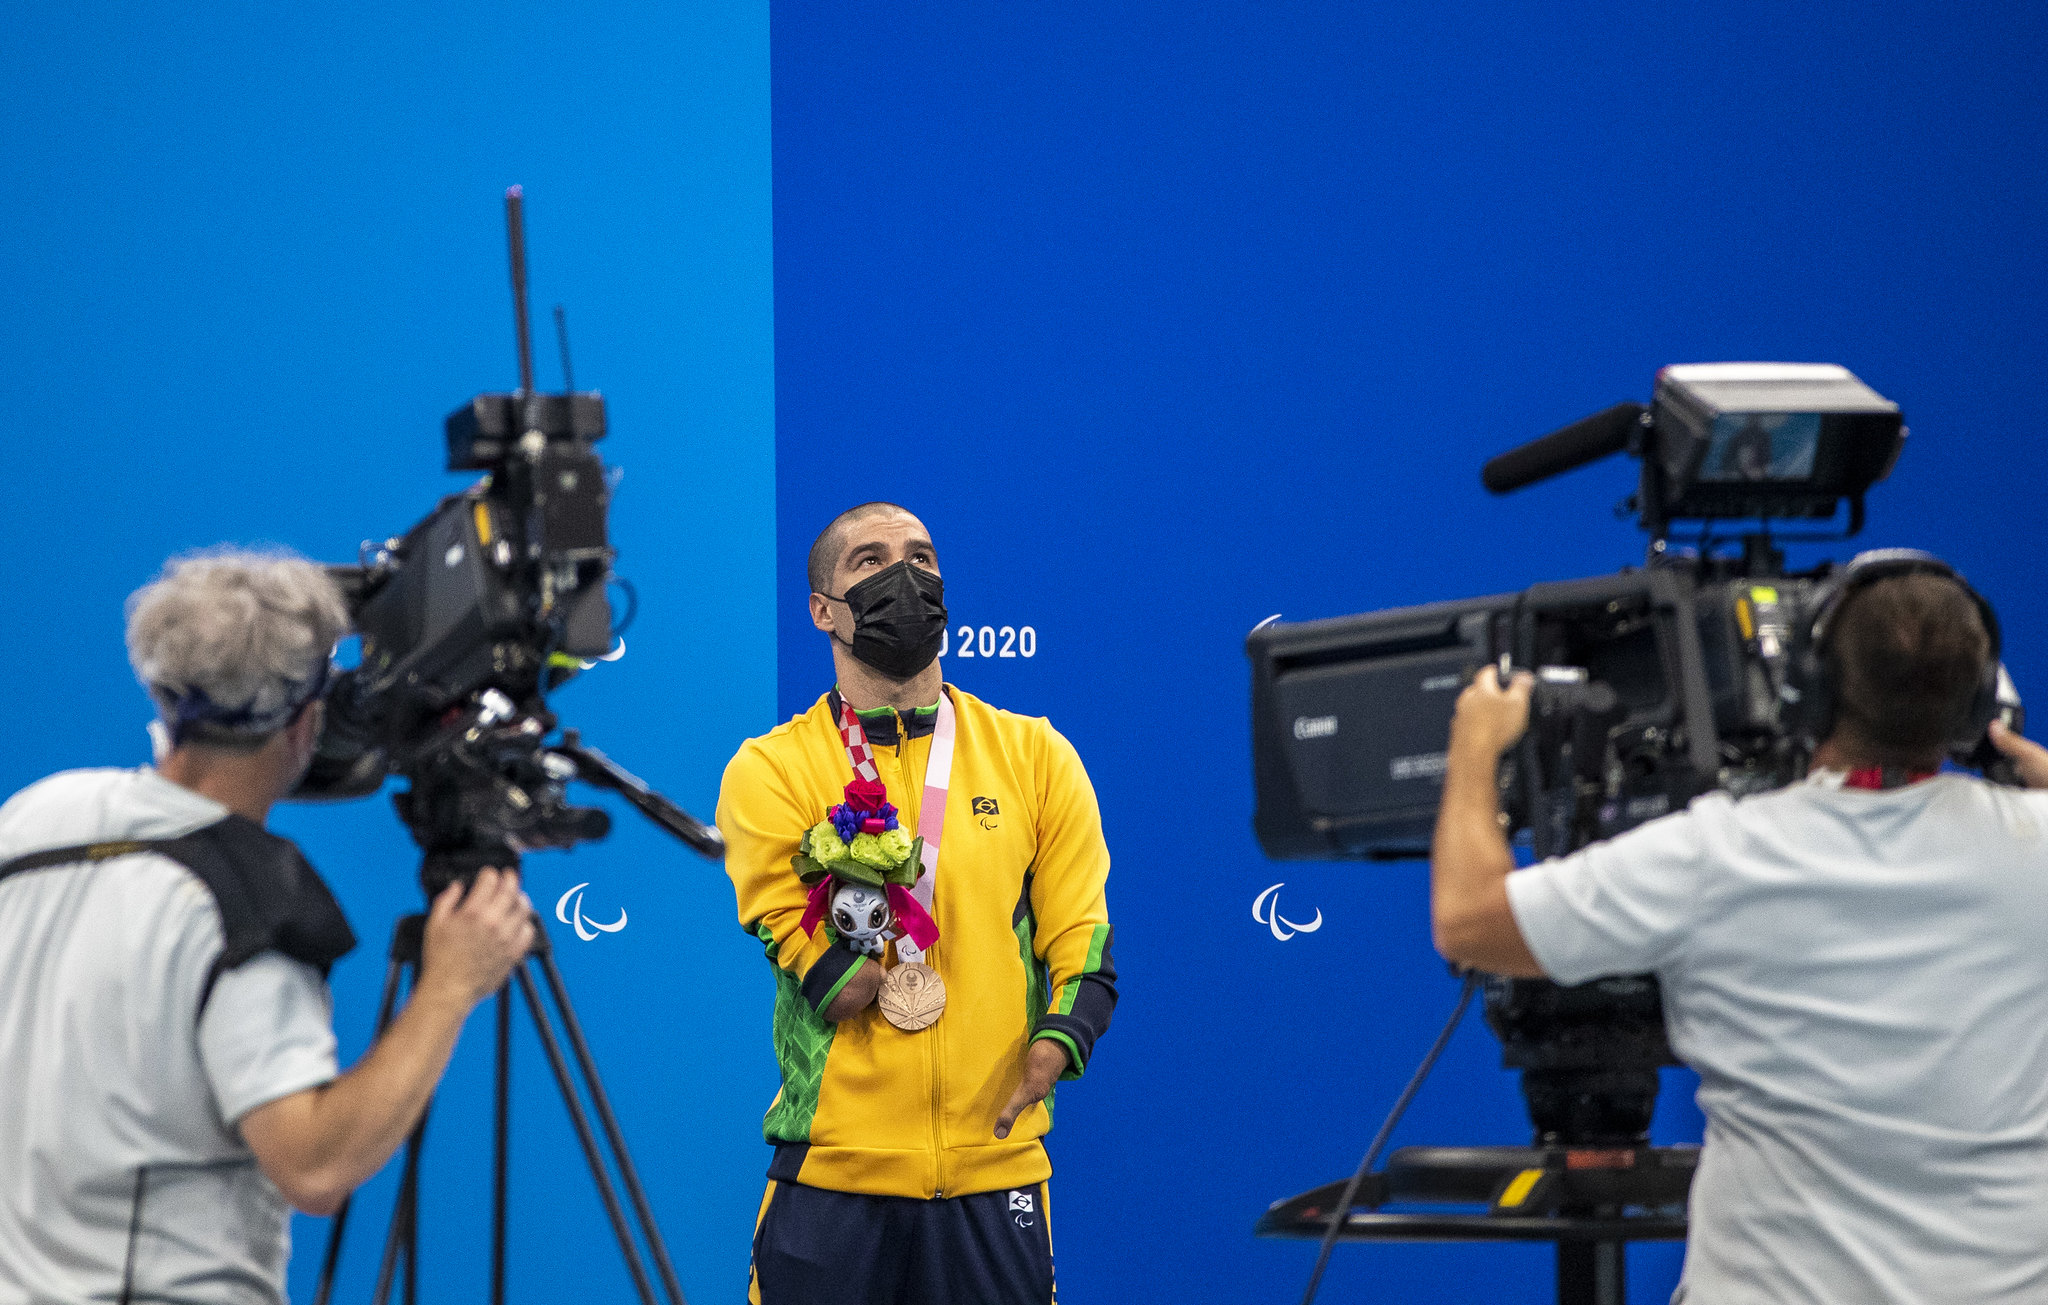 25/08/2021: Nadador paralímpico brasileiro Daniel Dias usa uniforme, máscara facial e uma medalha de bronze no peito enquanto é filmado por duas câmeras nas finais da natação no Tokyo Aquatic Center. Foto: Ale Cabral/CPB. 